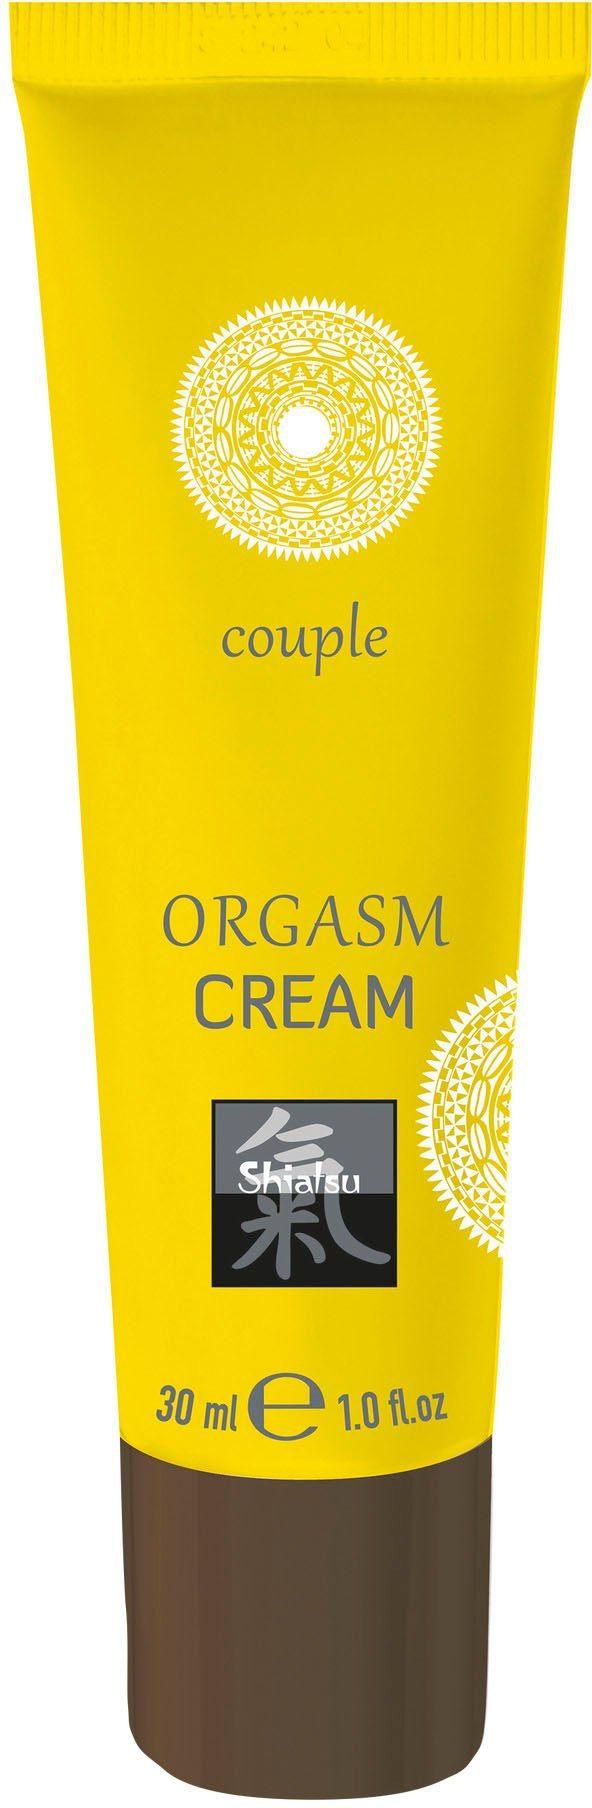 Fördermittelgeber Shiatsu Intimcreme, Cream Orgasm